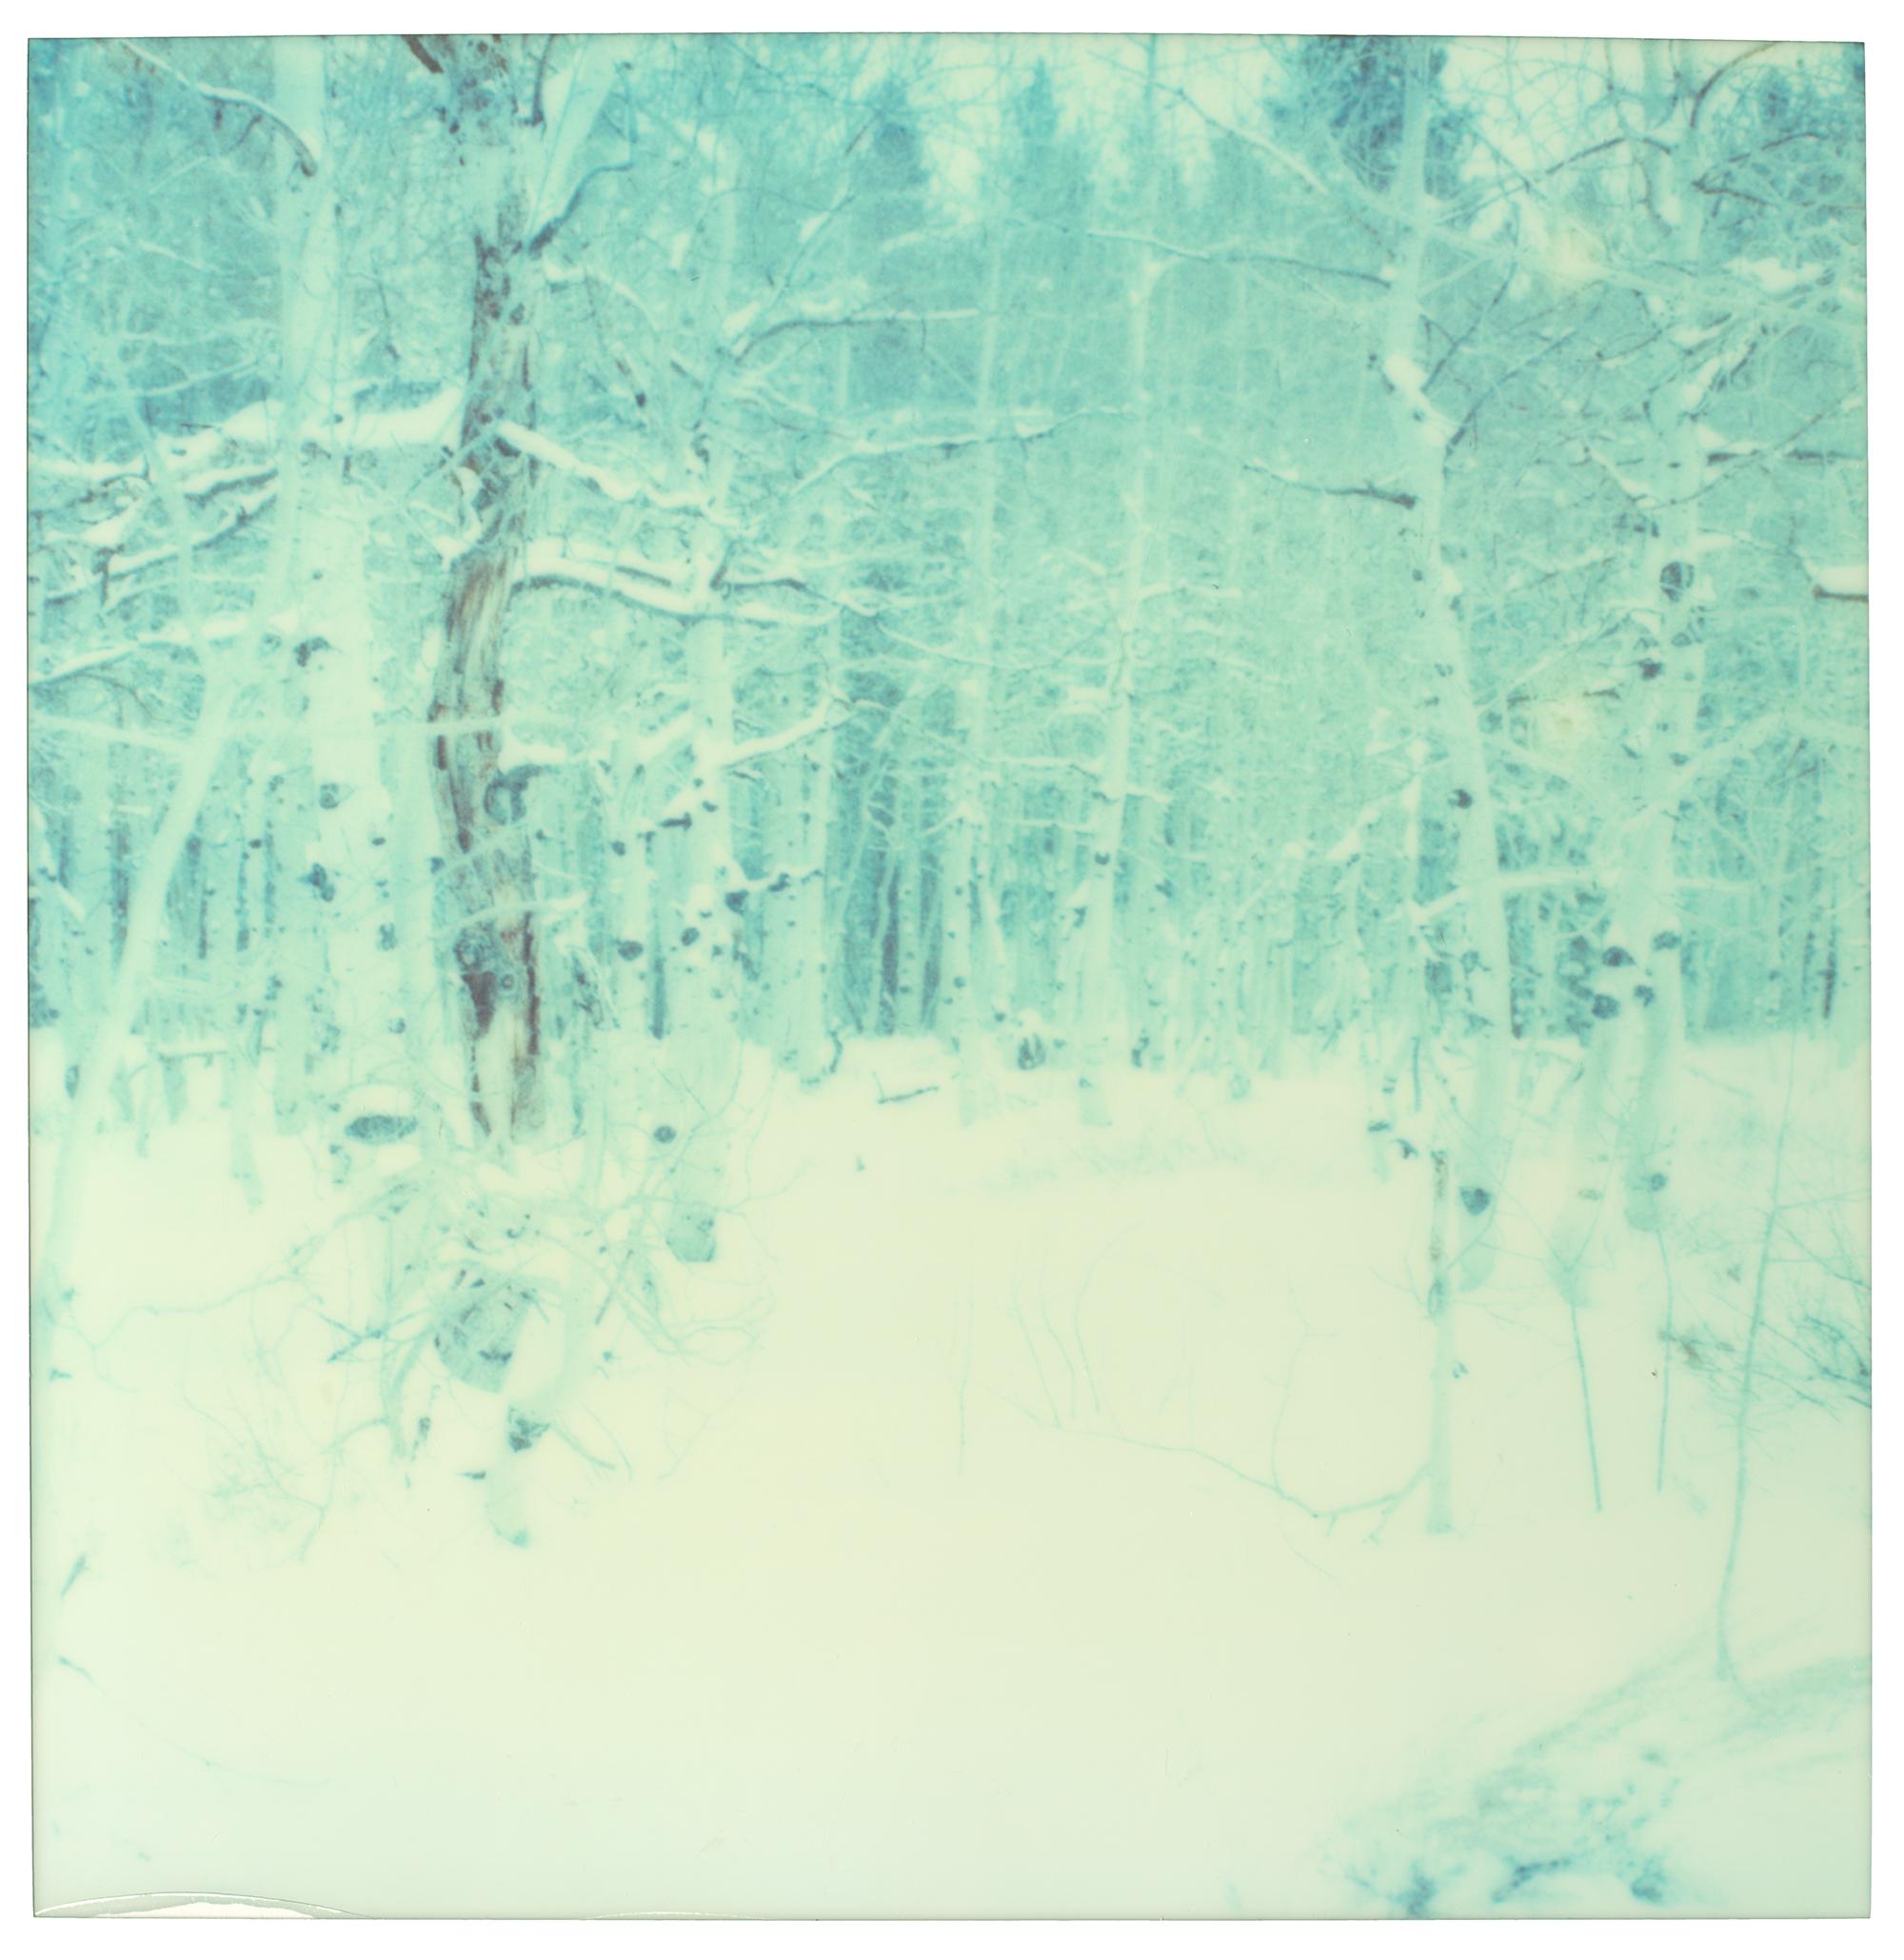 Stefanie Schneider Landscape Photograph - Winter (Wastelands) - Contemporary, Landscape, Polaroid, Analog, 21st Century